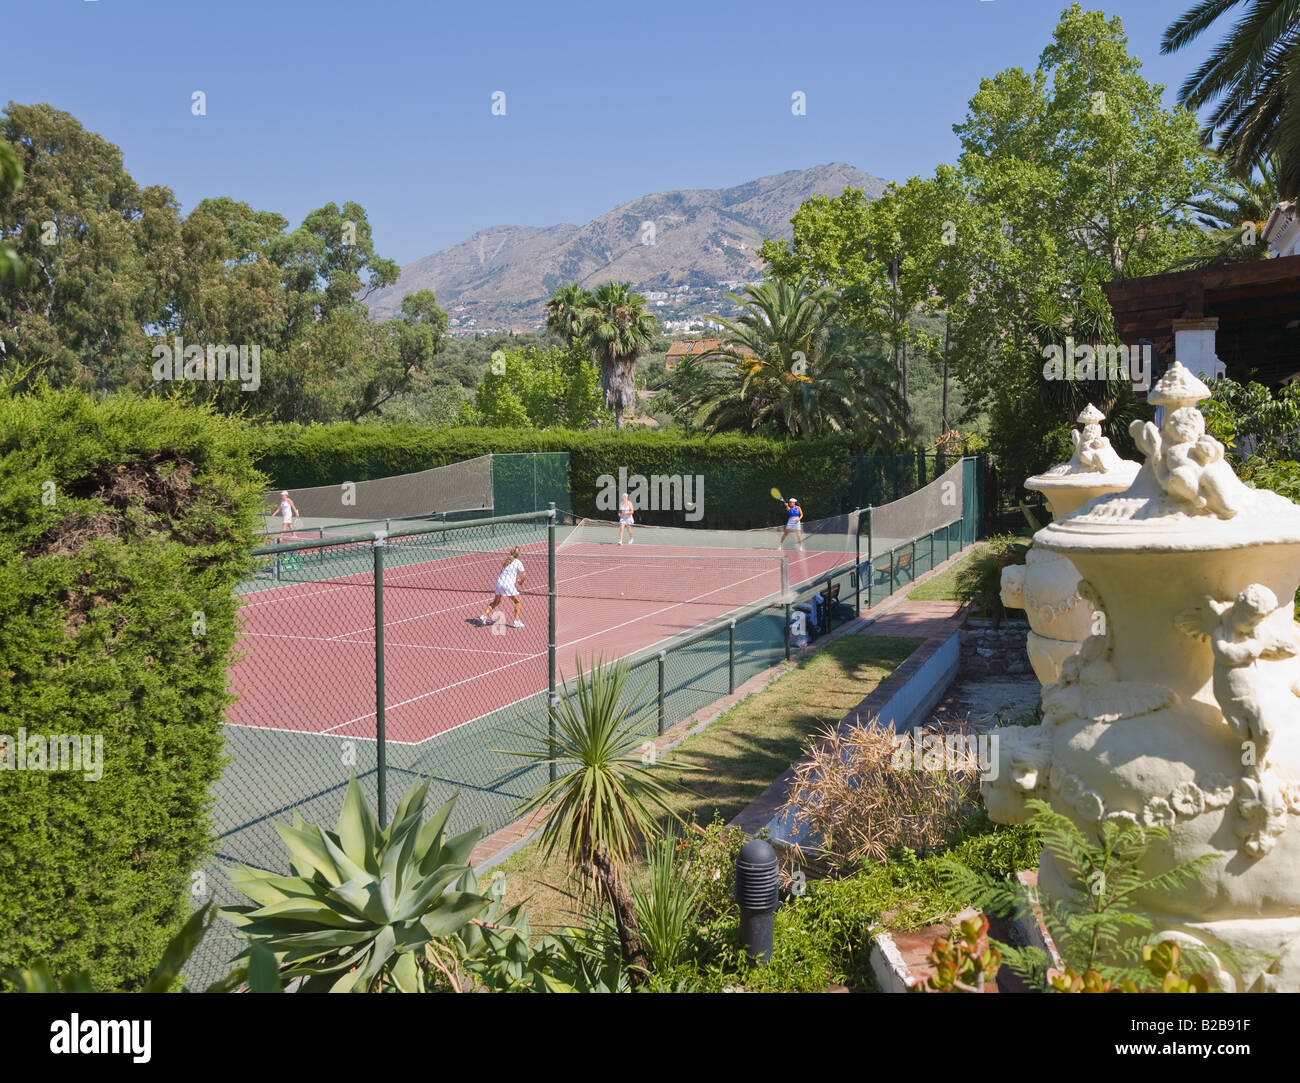 Mijas Malaga Province inland Costa del Sol Spain Lew Hoad s Tennis Ranch  Campo de Tenis y Padel Stock Photo - Alamy